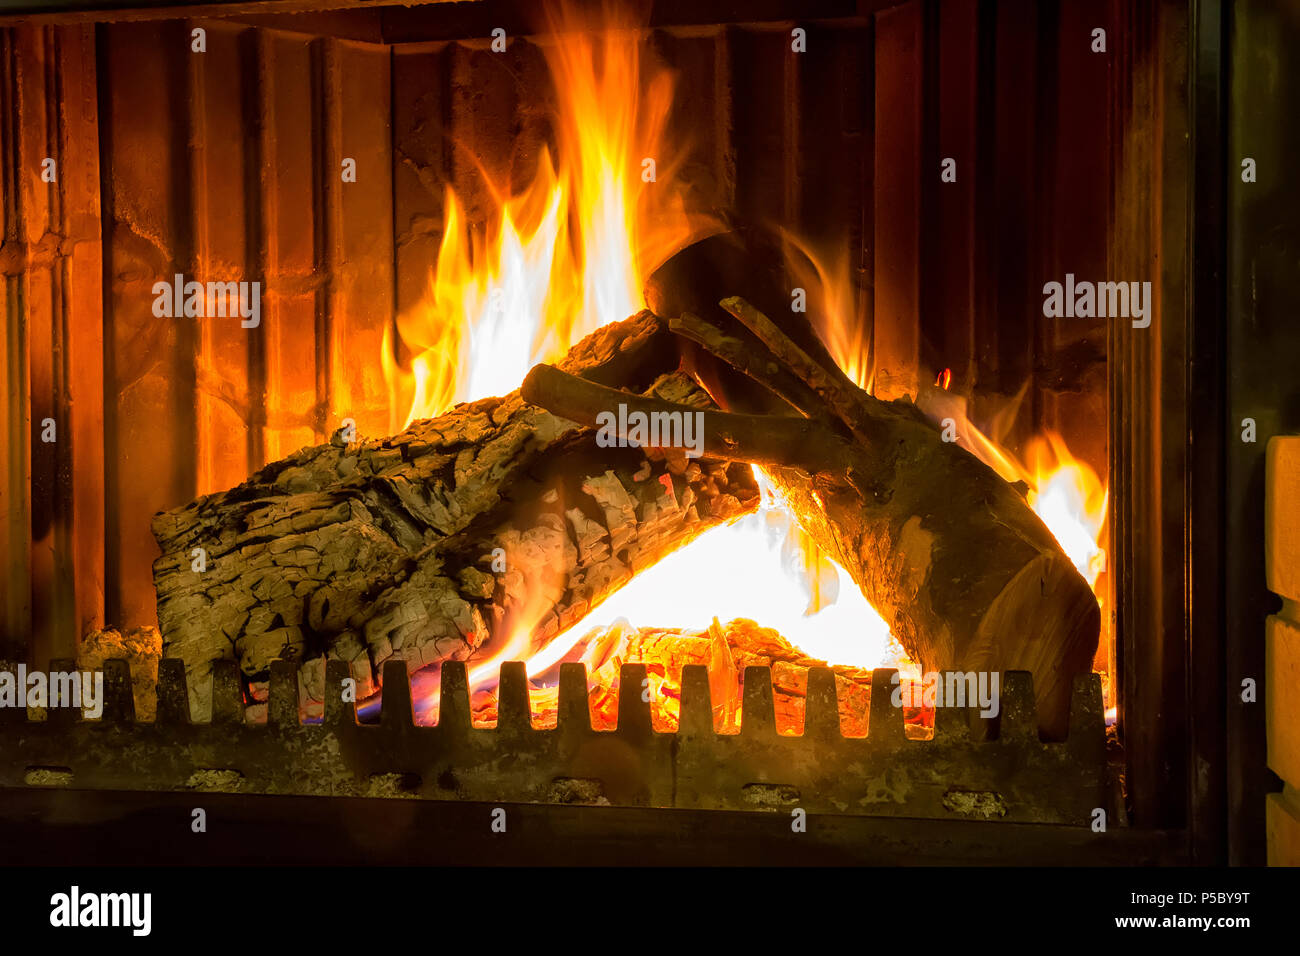 Lửa đốt là một phần vô cùng quan trọng của buổi tiệc Giáng sinh. Chúng mang lại không khí ấm áp, tạo nên một cảm giác thân thuộc cho mọi người. Hãy xem những hình ảnh đẹp của lửa đốt trong đêm Giáng sinh.